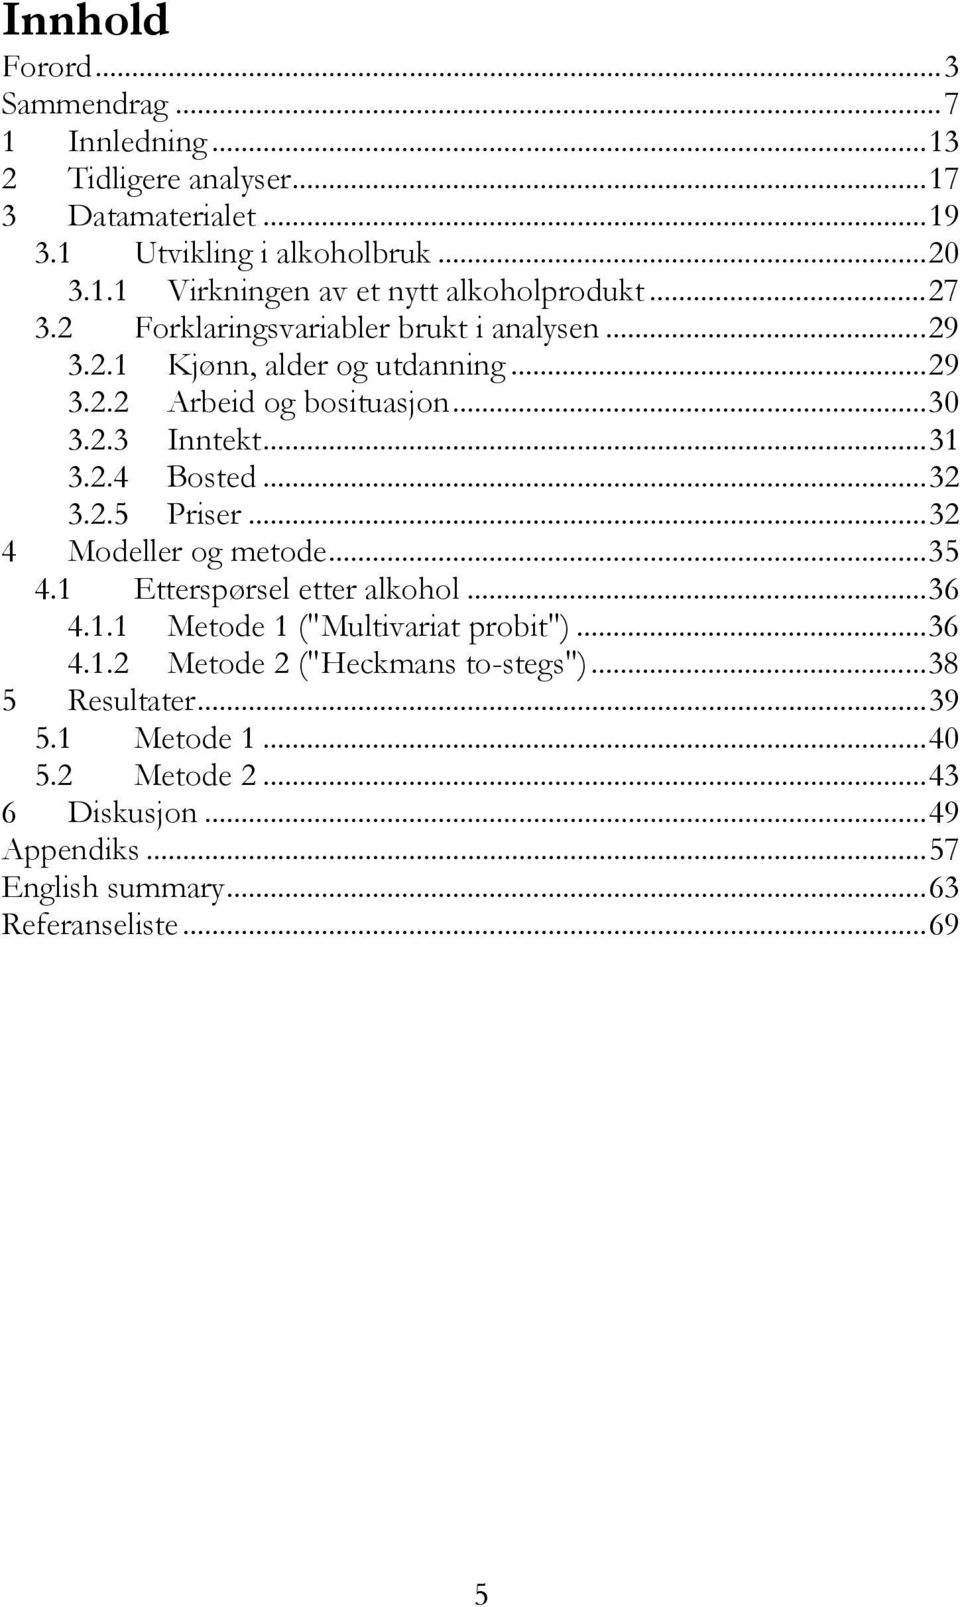 ..32 3.2.5 Priser...32 4 Modeller og metode...35 4.1 Etterspørsel etter alkohol...36 4.1.1 Metode 1 ("Multivariat probit")...36 4.1.2 Metode 2 ("Heckmans to-stegs").